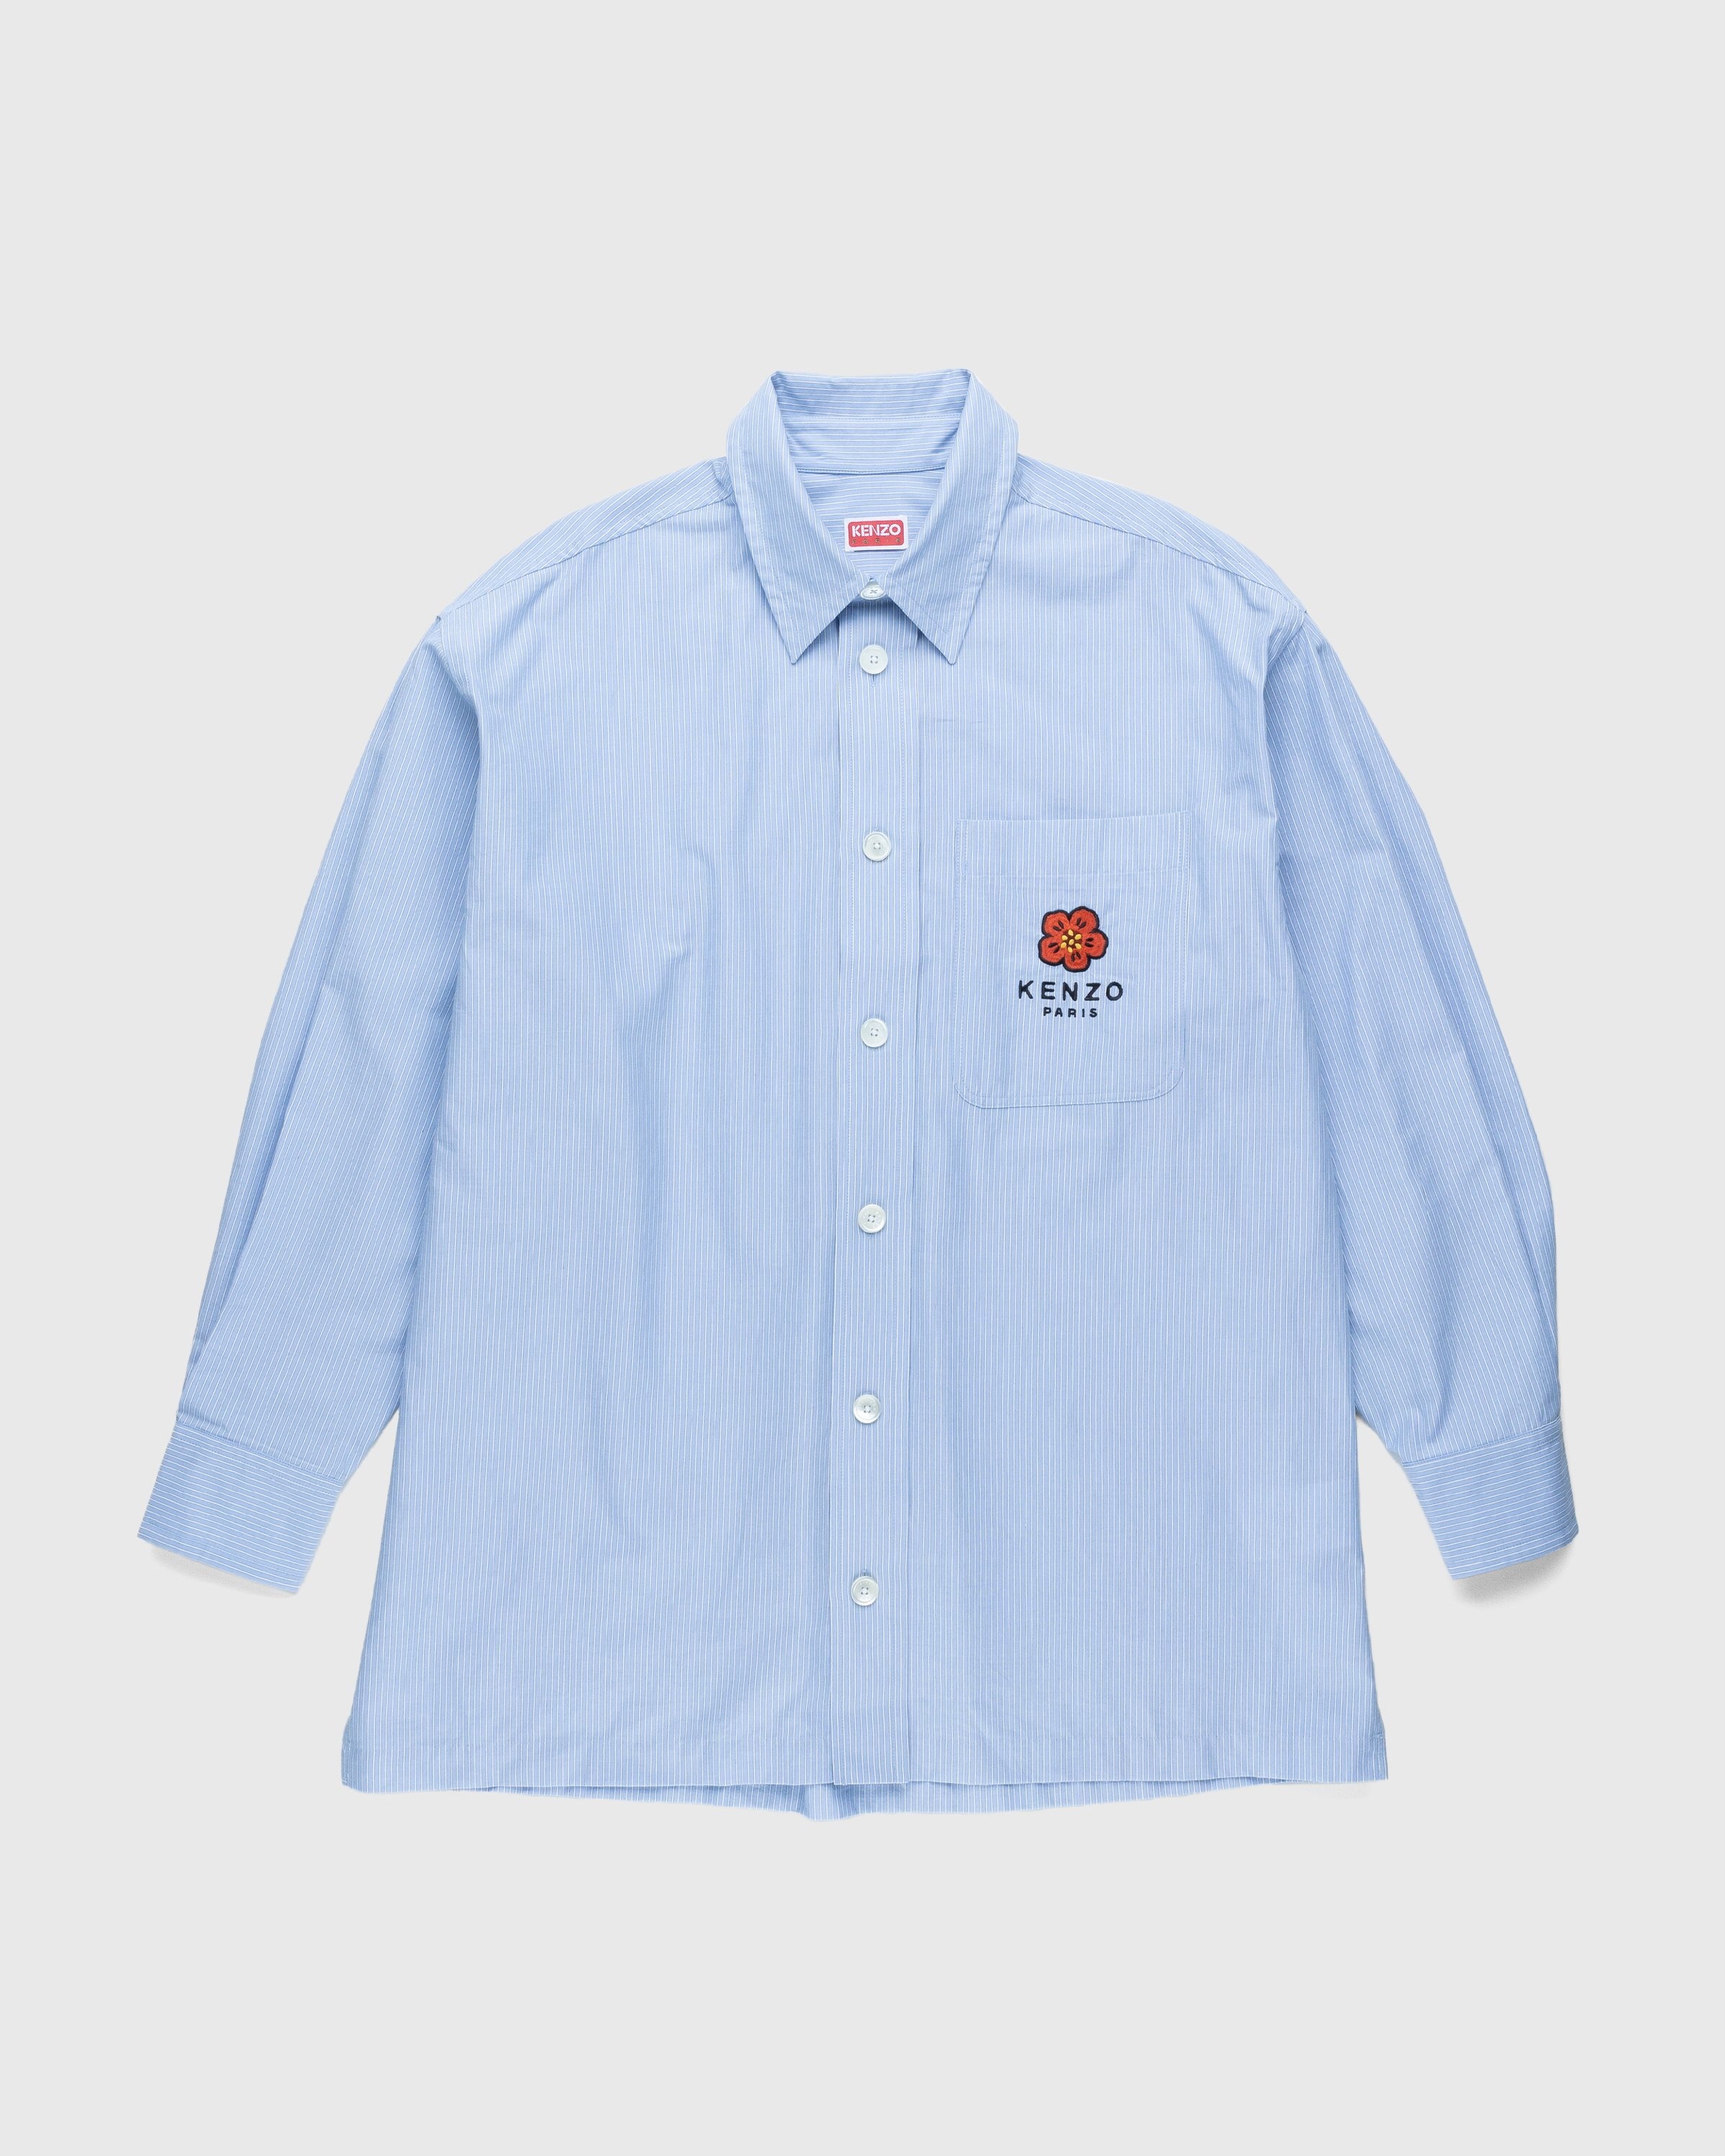 Kenzo – Boke Flower Crest Overshirt Sky Blue - Shirts - Blue - Image 1